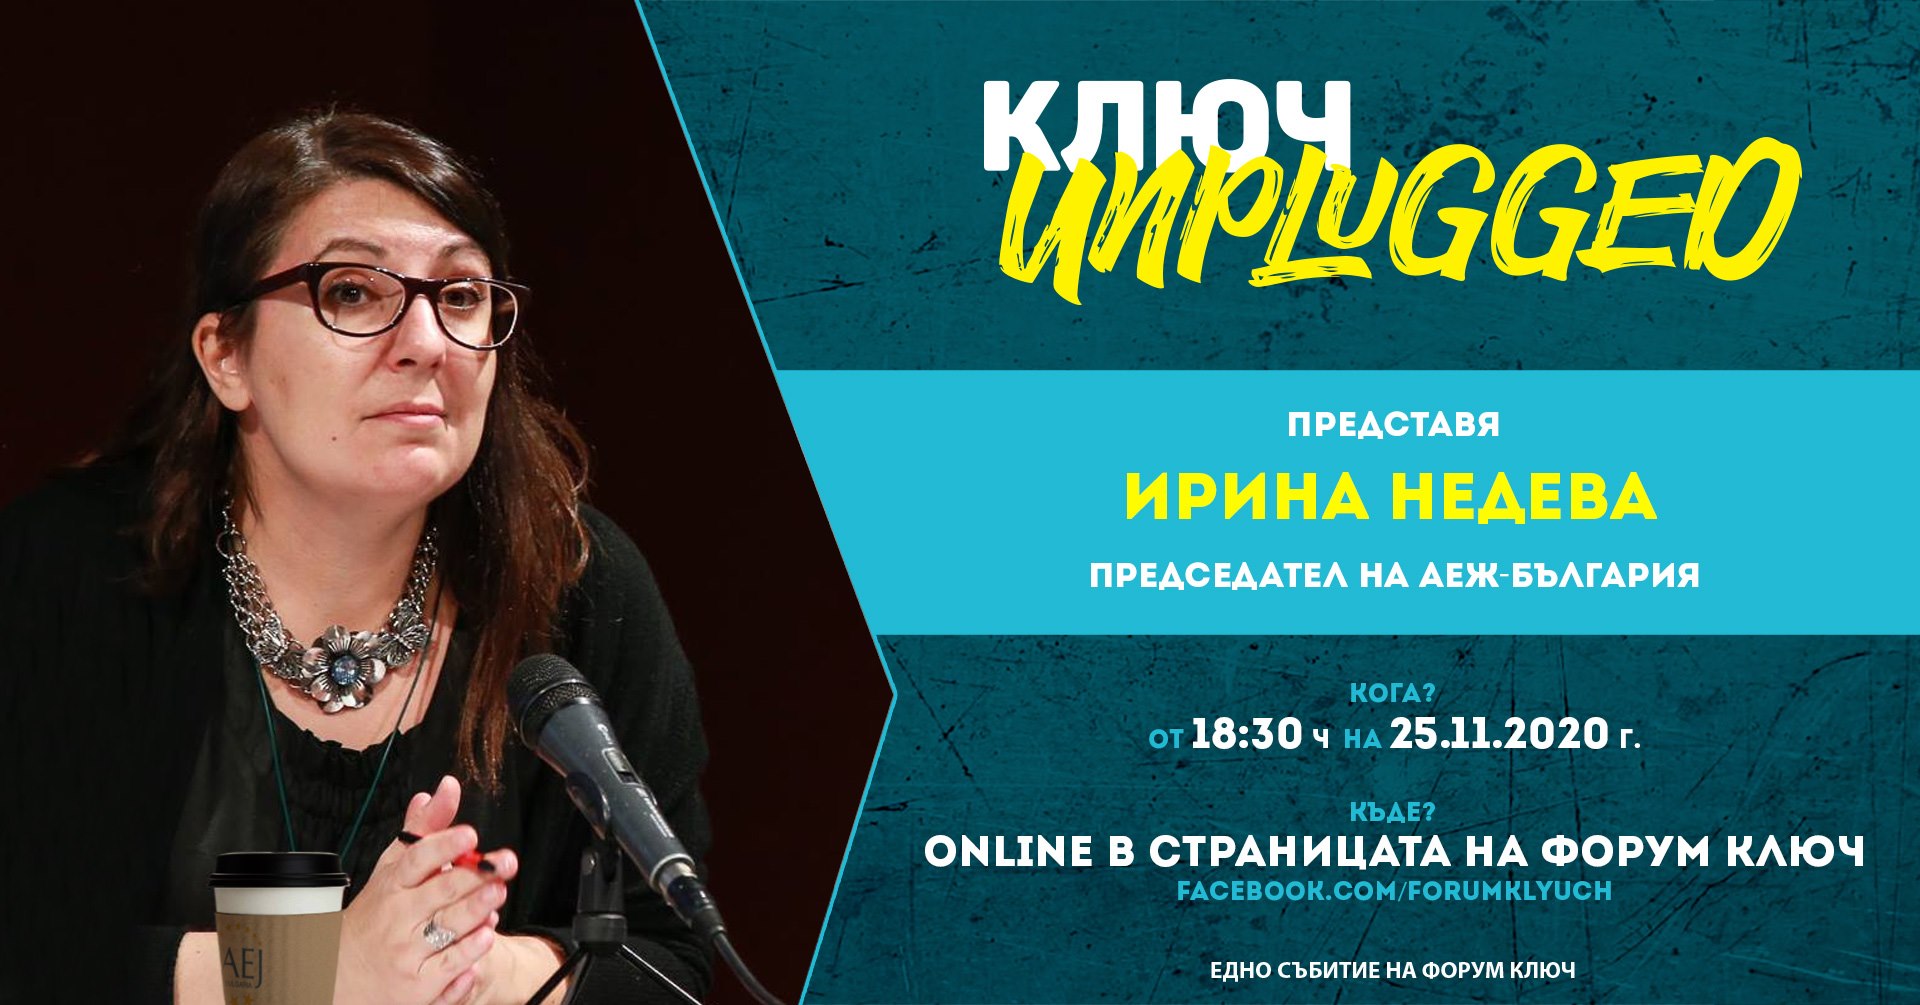 КЛЮЧ Unplugged представя Ирина Недева, председател на АЕЖ